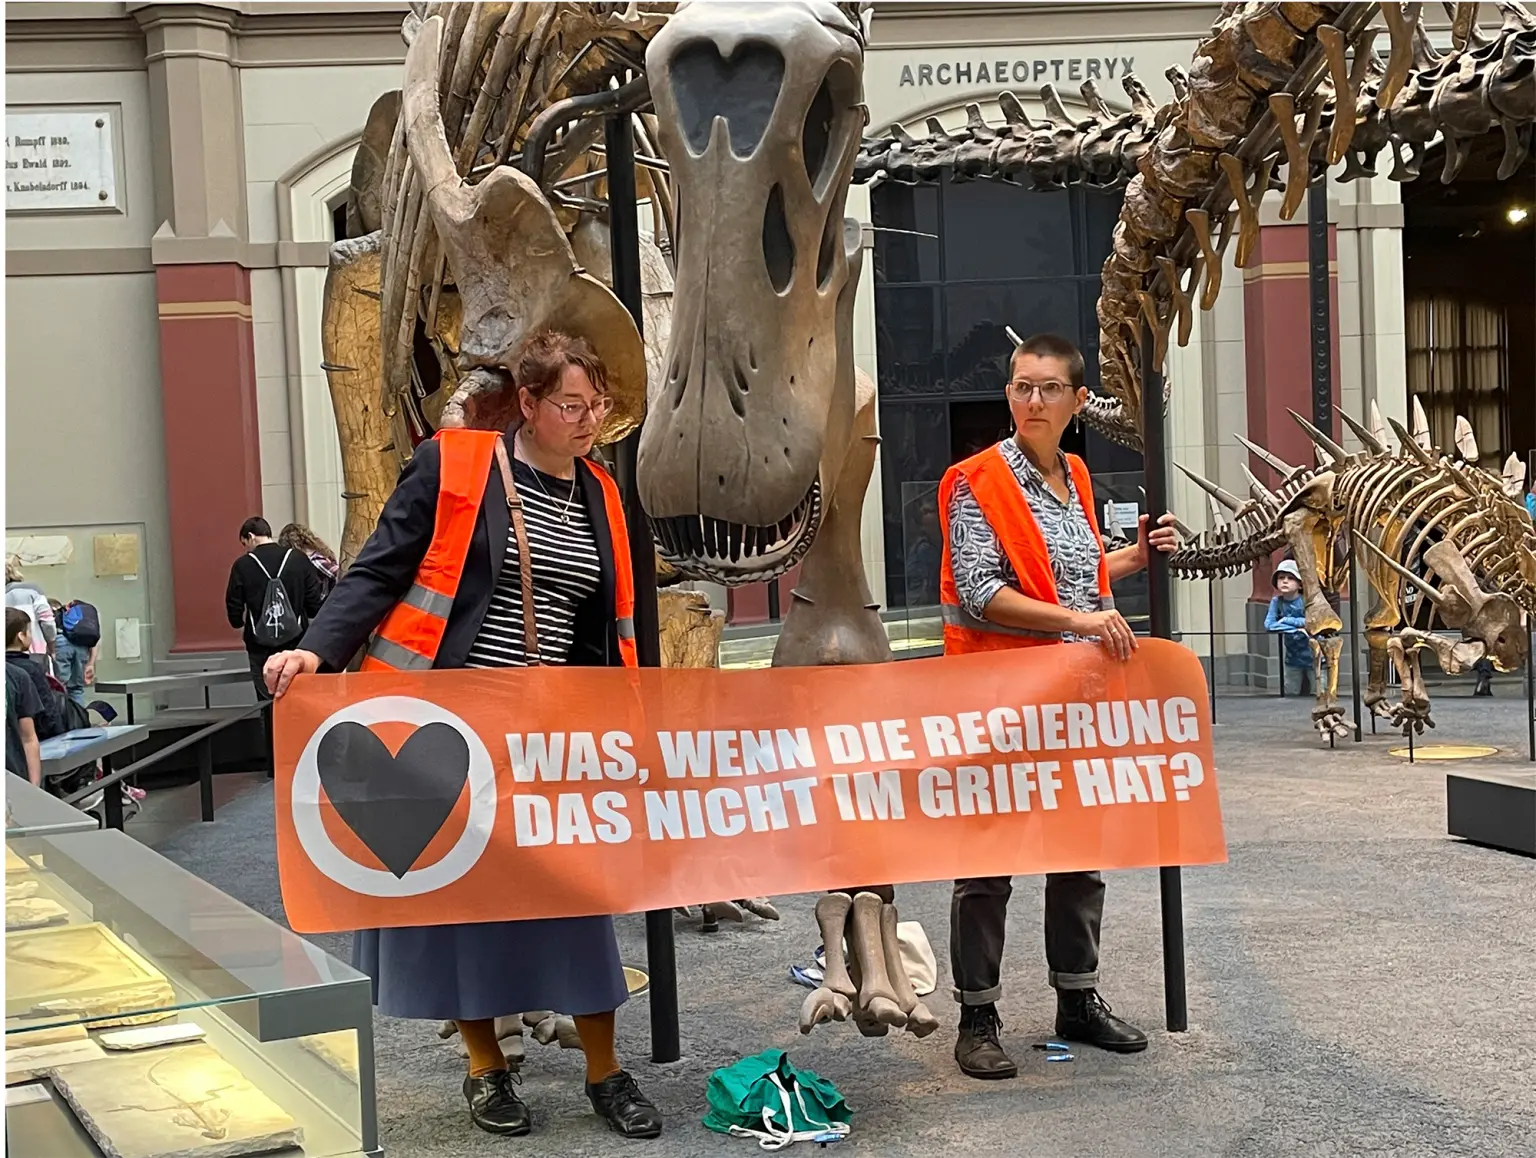 Dùng keo dán người vào xương khủng long để phản đối chính sách khí hậu của Đức - ảnh 1